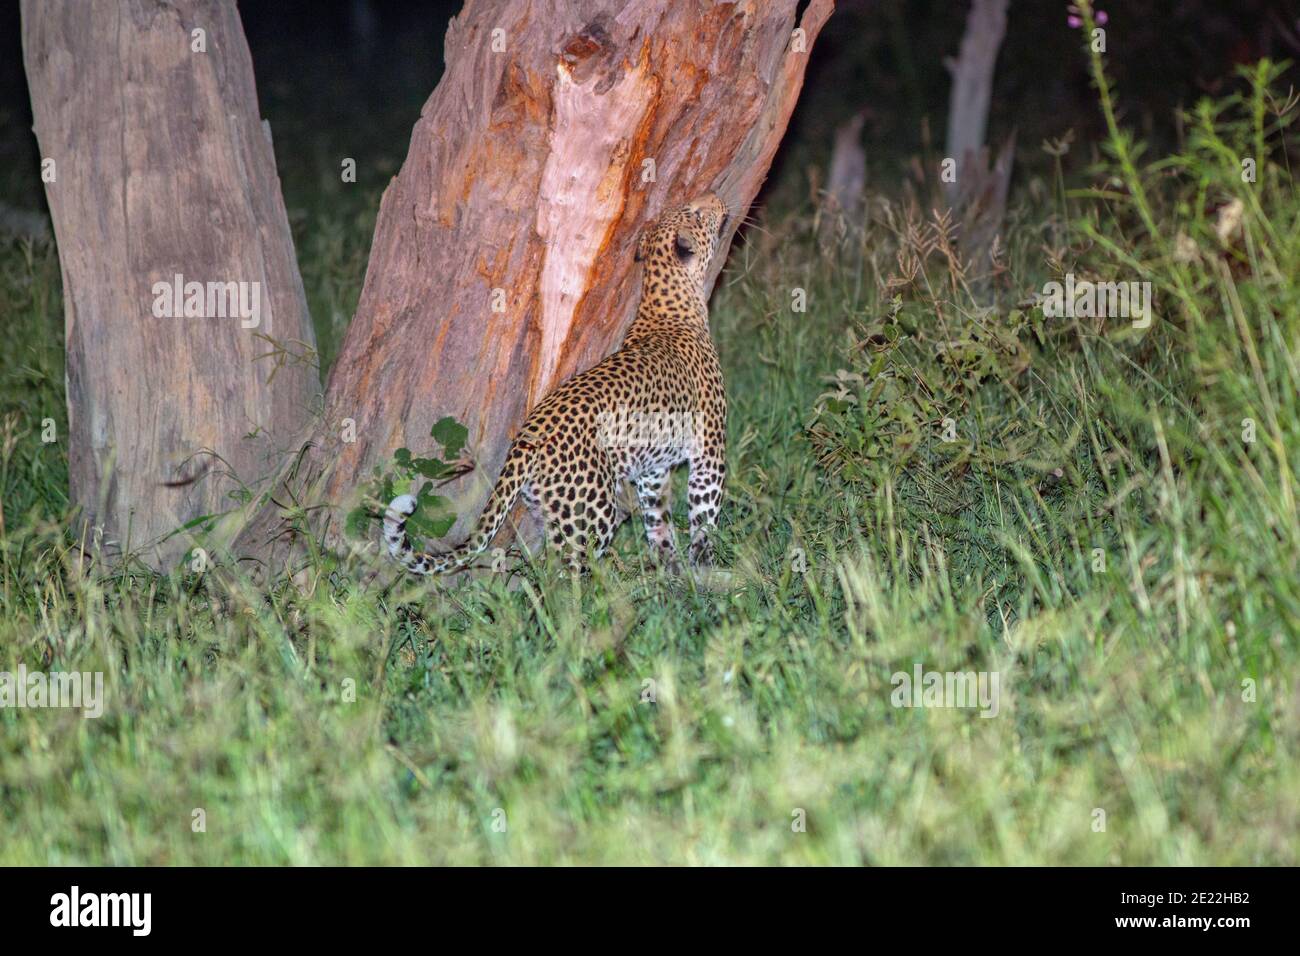 Leopardo (Panthera pardus) strofinando la ghiandola di guancia contro il tronco di albero che registra la presenza ad altri. Notturno. Utilizzo della luce spot proveniente da un veicolo. Botswana. Foto Stock